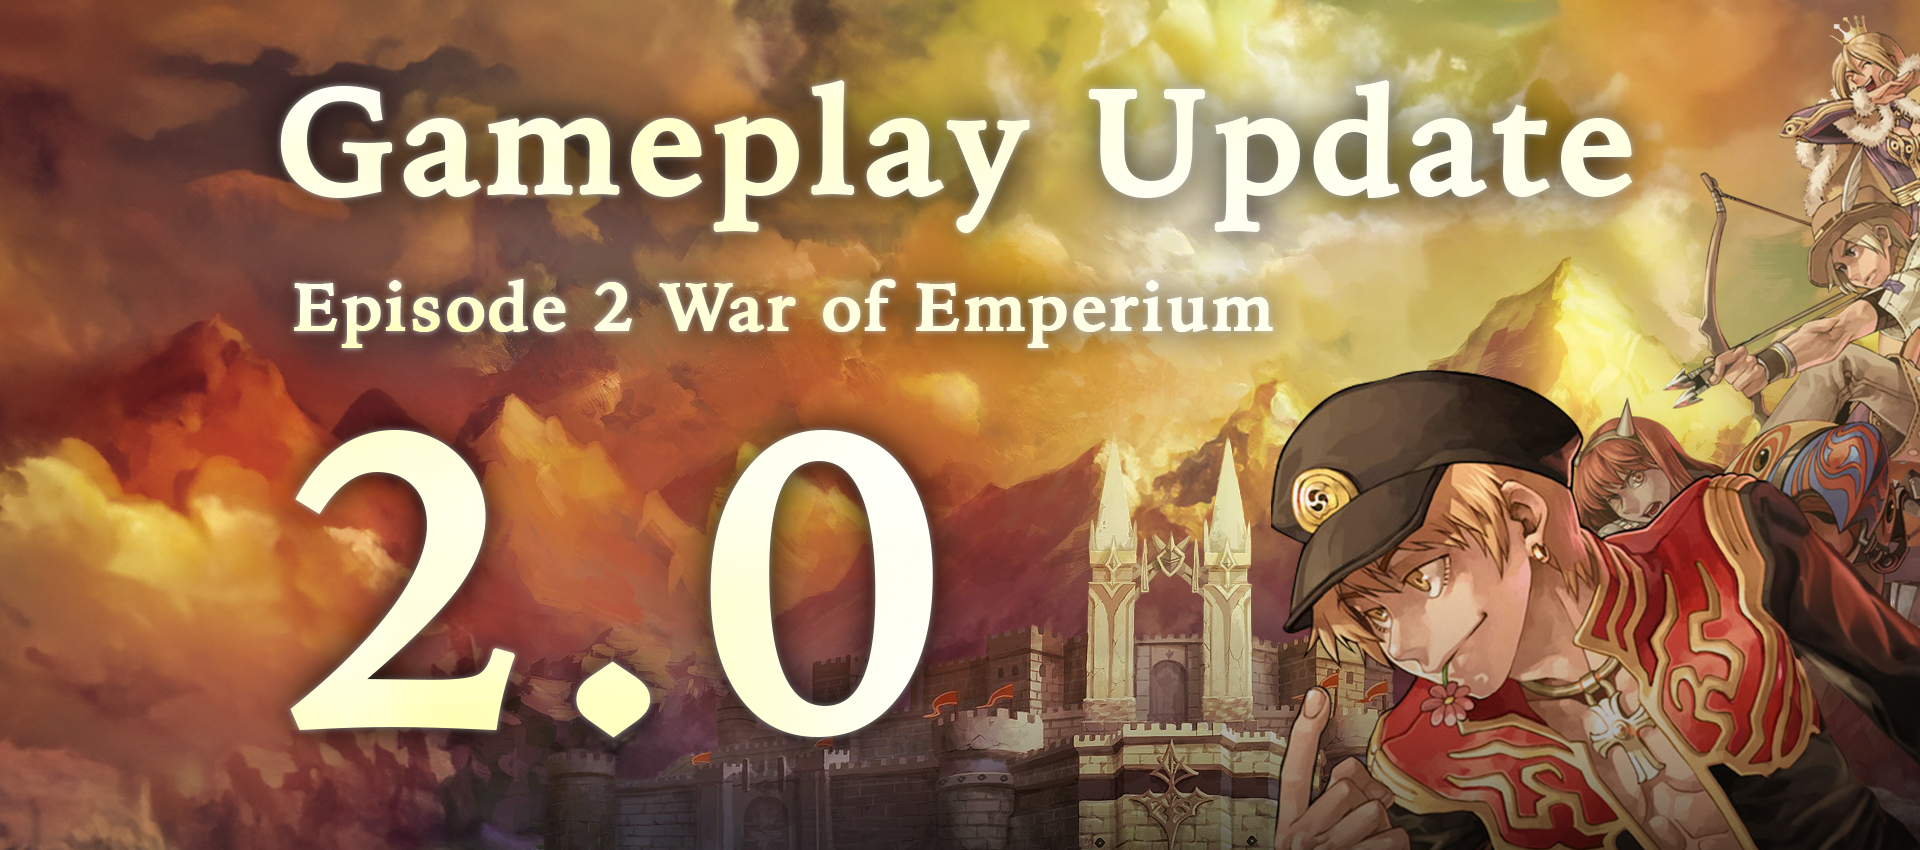 Gameplay Update 2.0 : War of Emperium